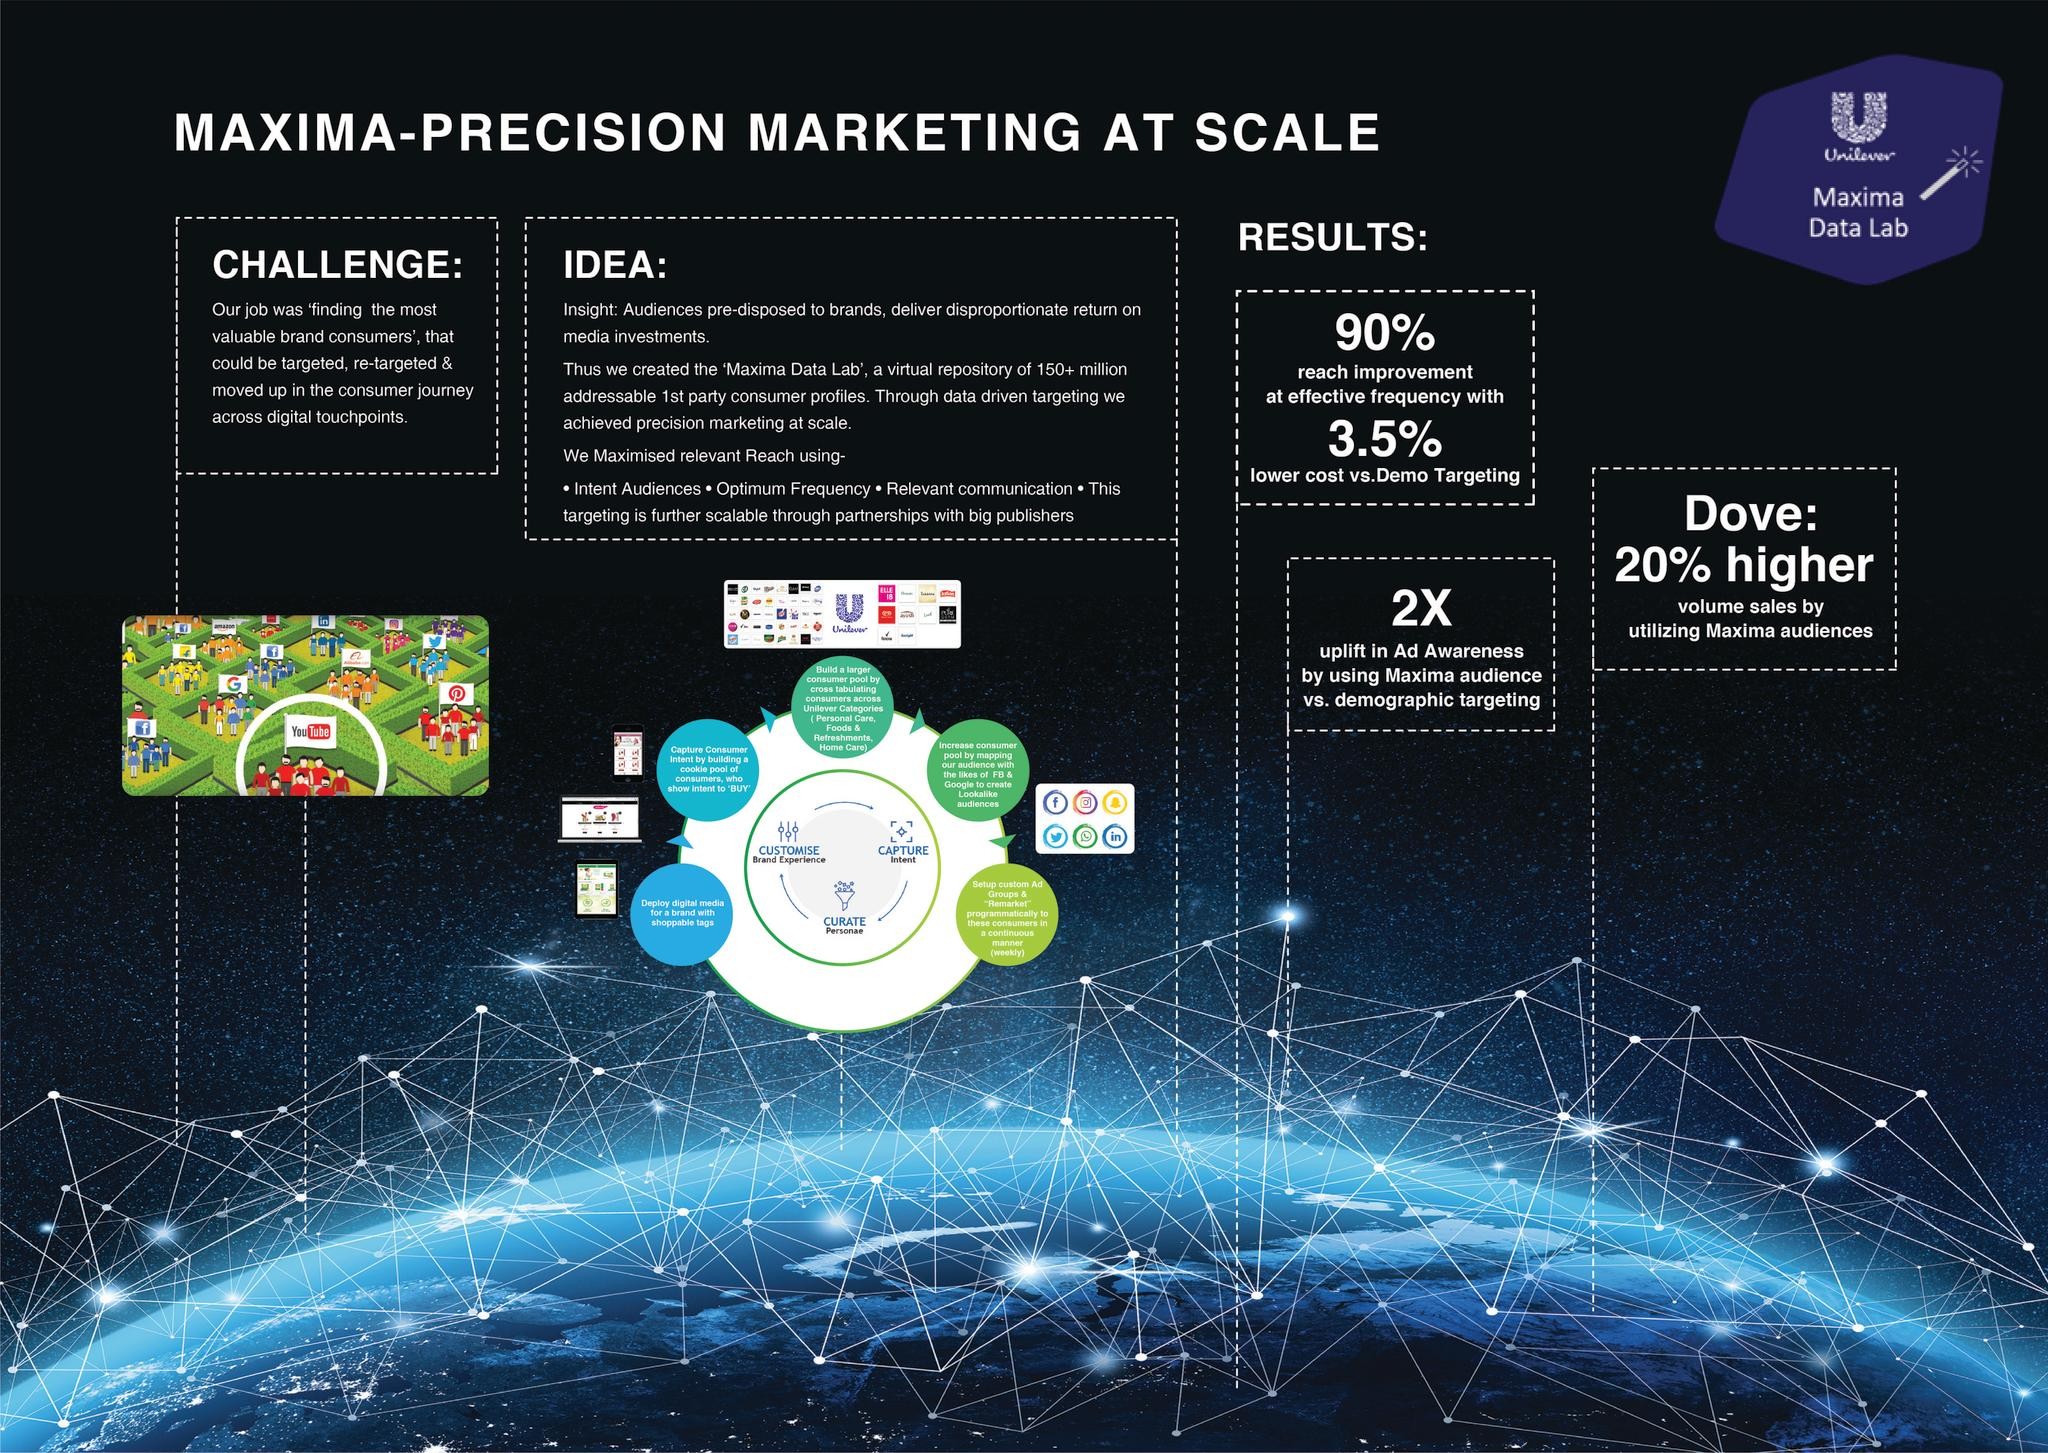 Maxima-Precision Marketing at Scale